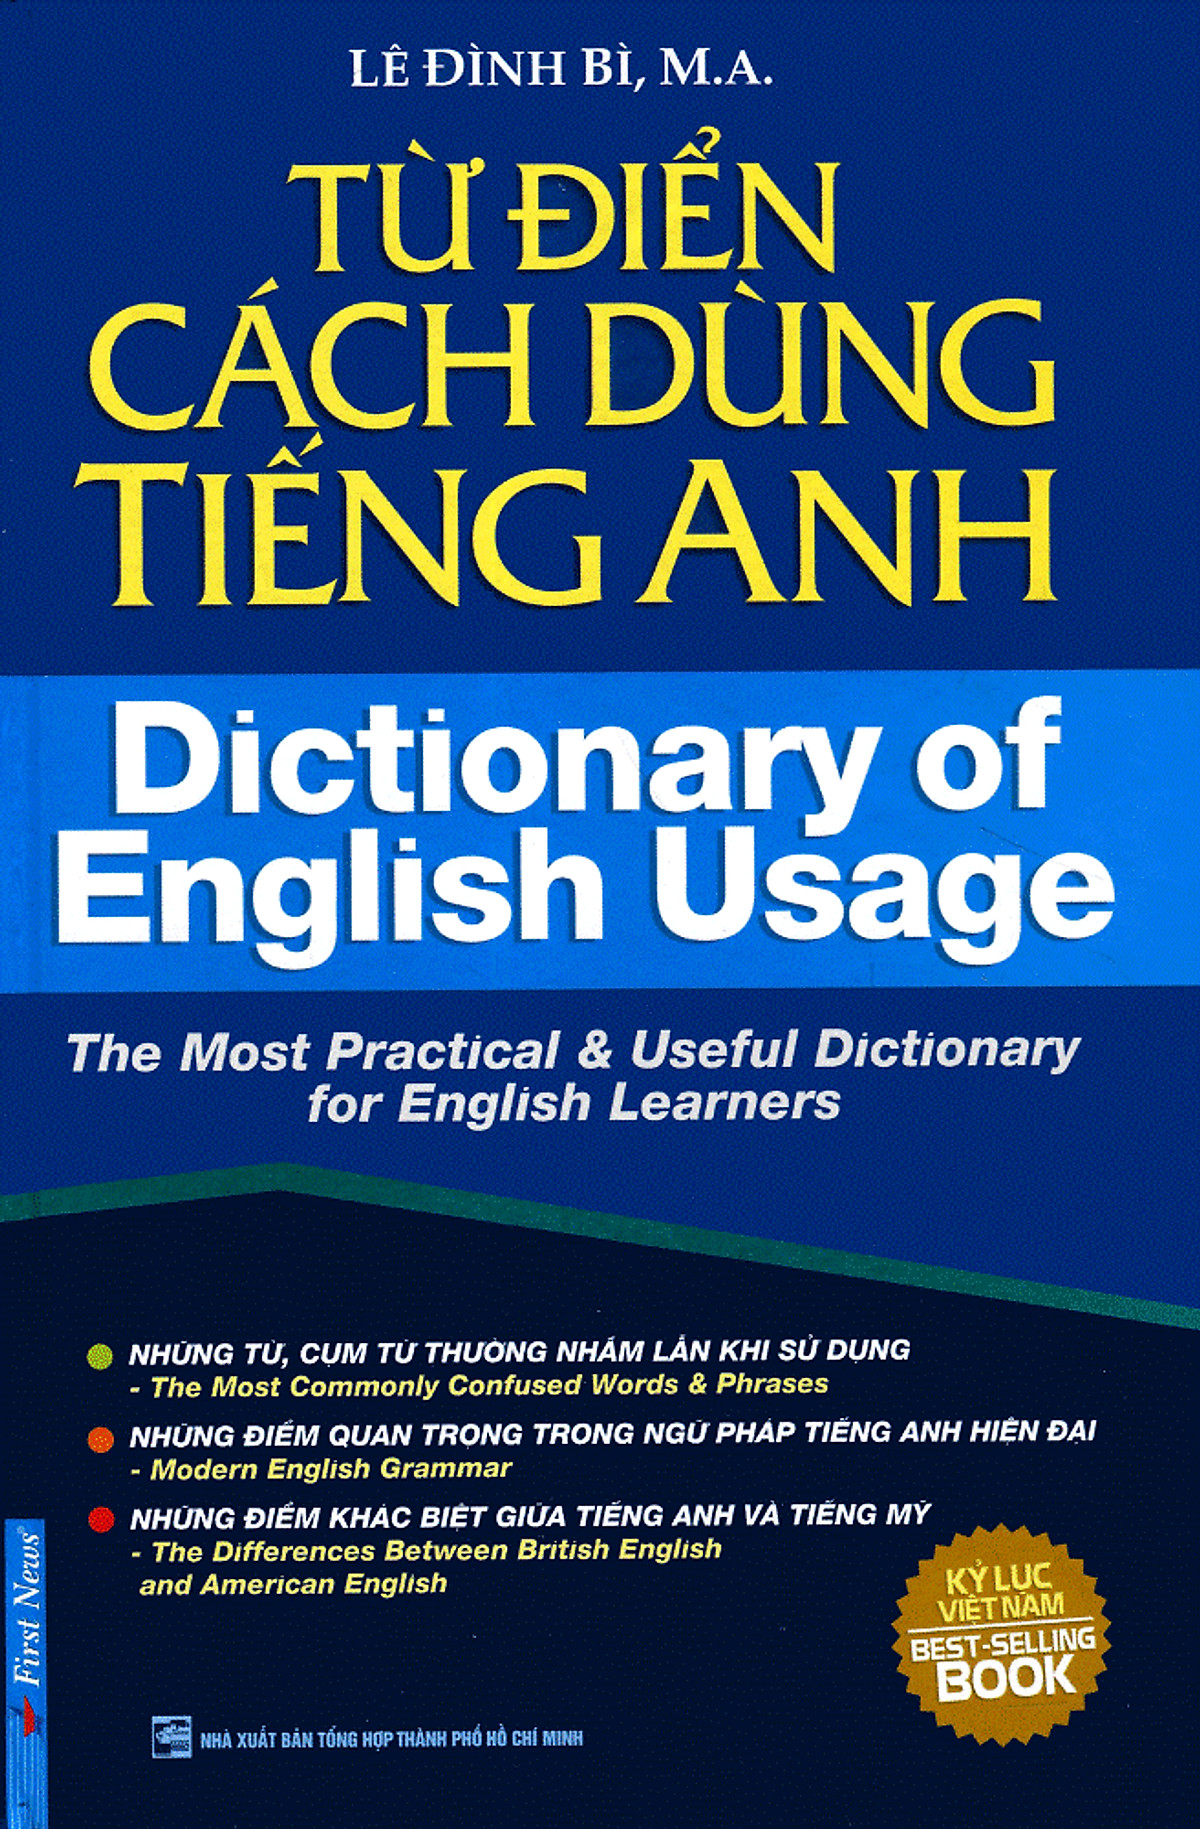 Từ Điển Cách Dùng Tiếng Anh - Dictionary Of English UsageBÌA CỨNG